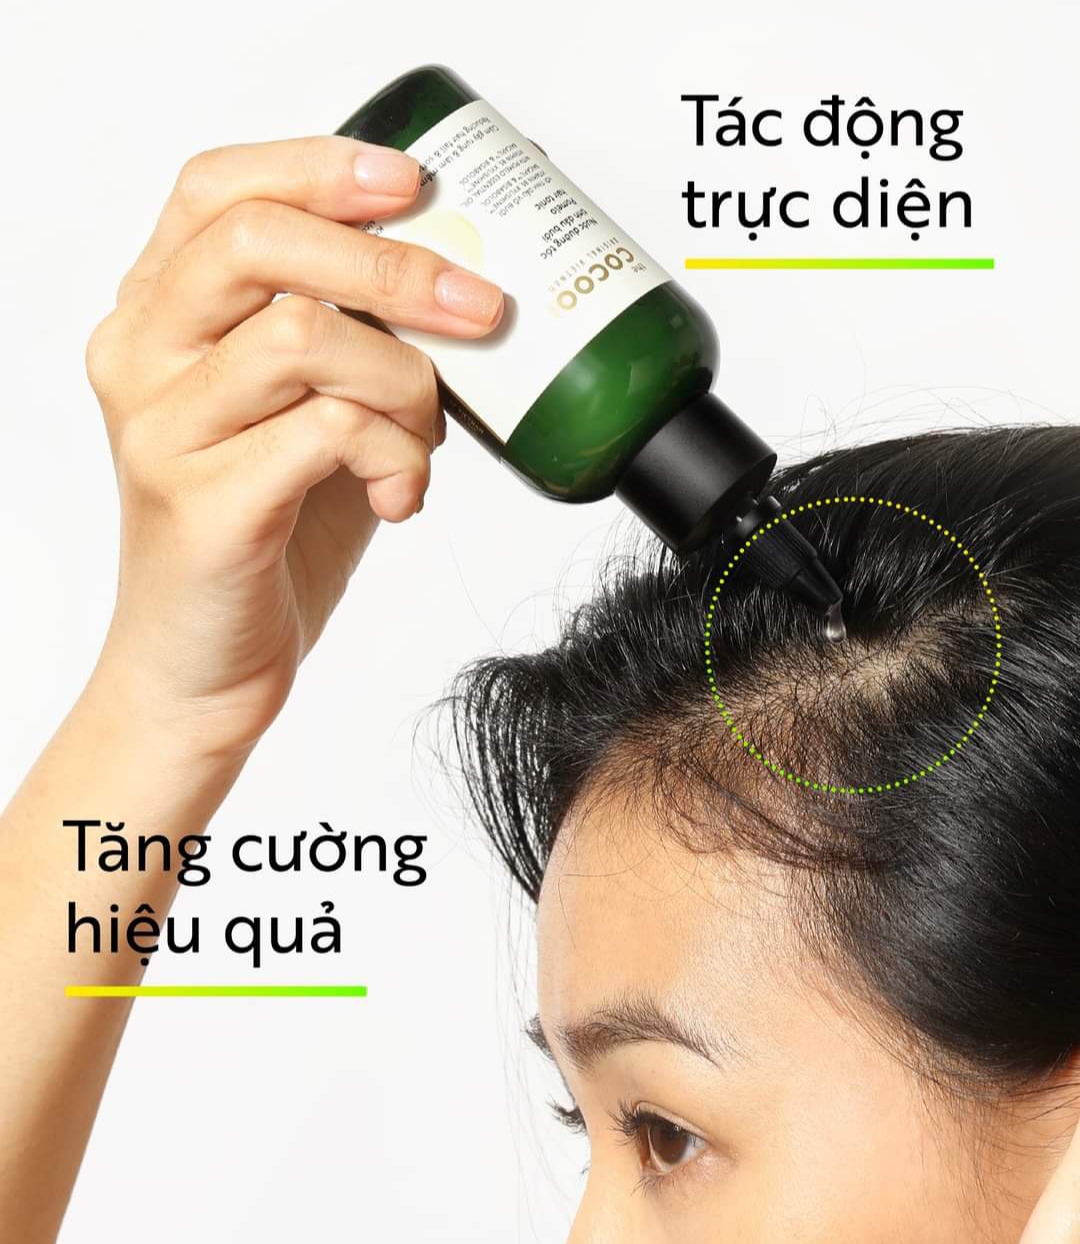 Nước dưỡng tóc tinh dầu bưởi Cocoon giảm rụng phục hồi tóc hư tổn 140ml - Thanh Mộc Hương Hà Tĩnh